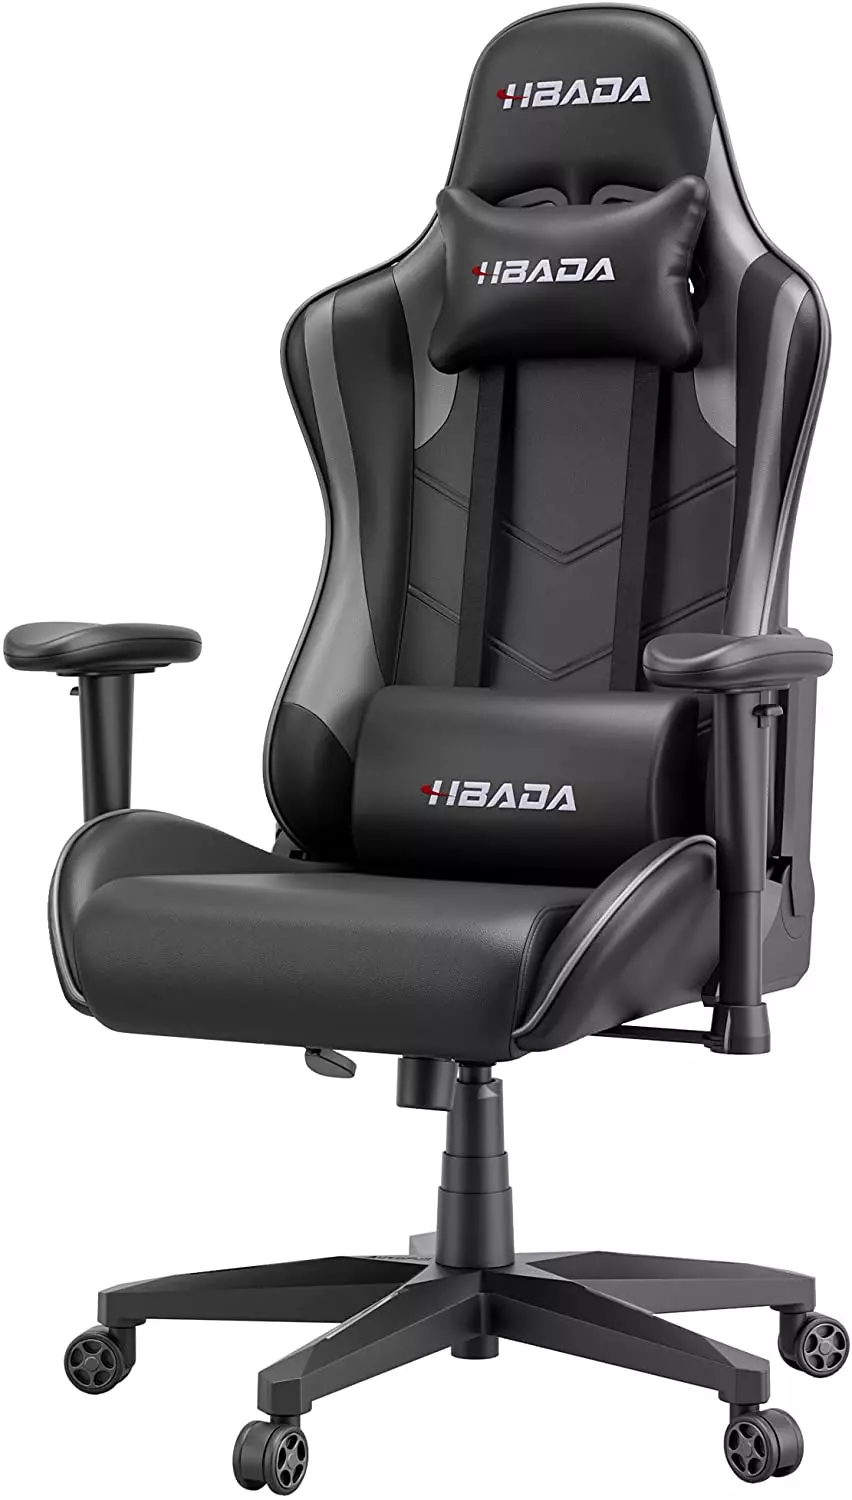 Hbada Gaming Ergonomic Chair